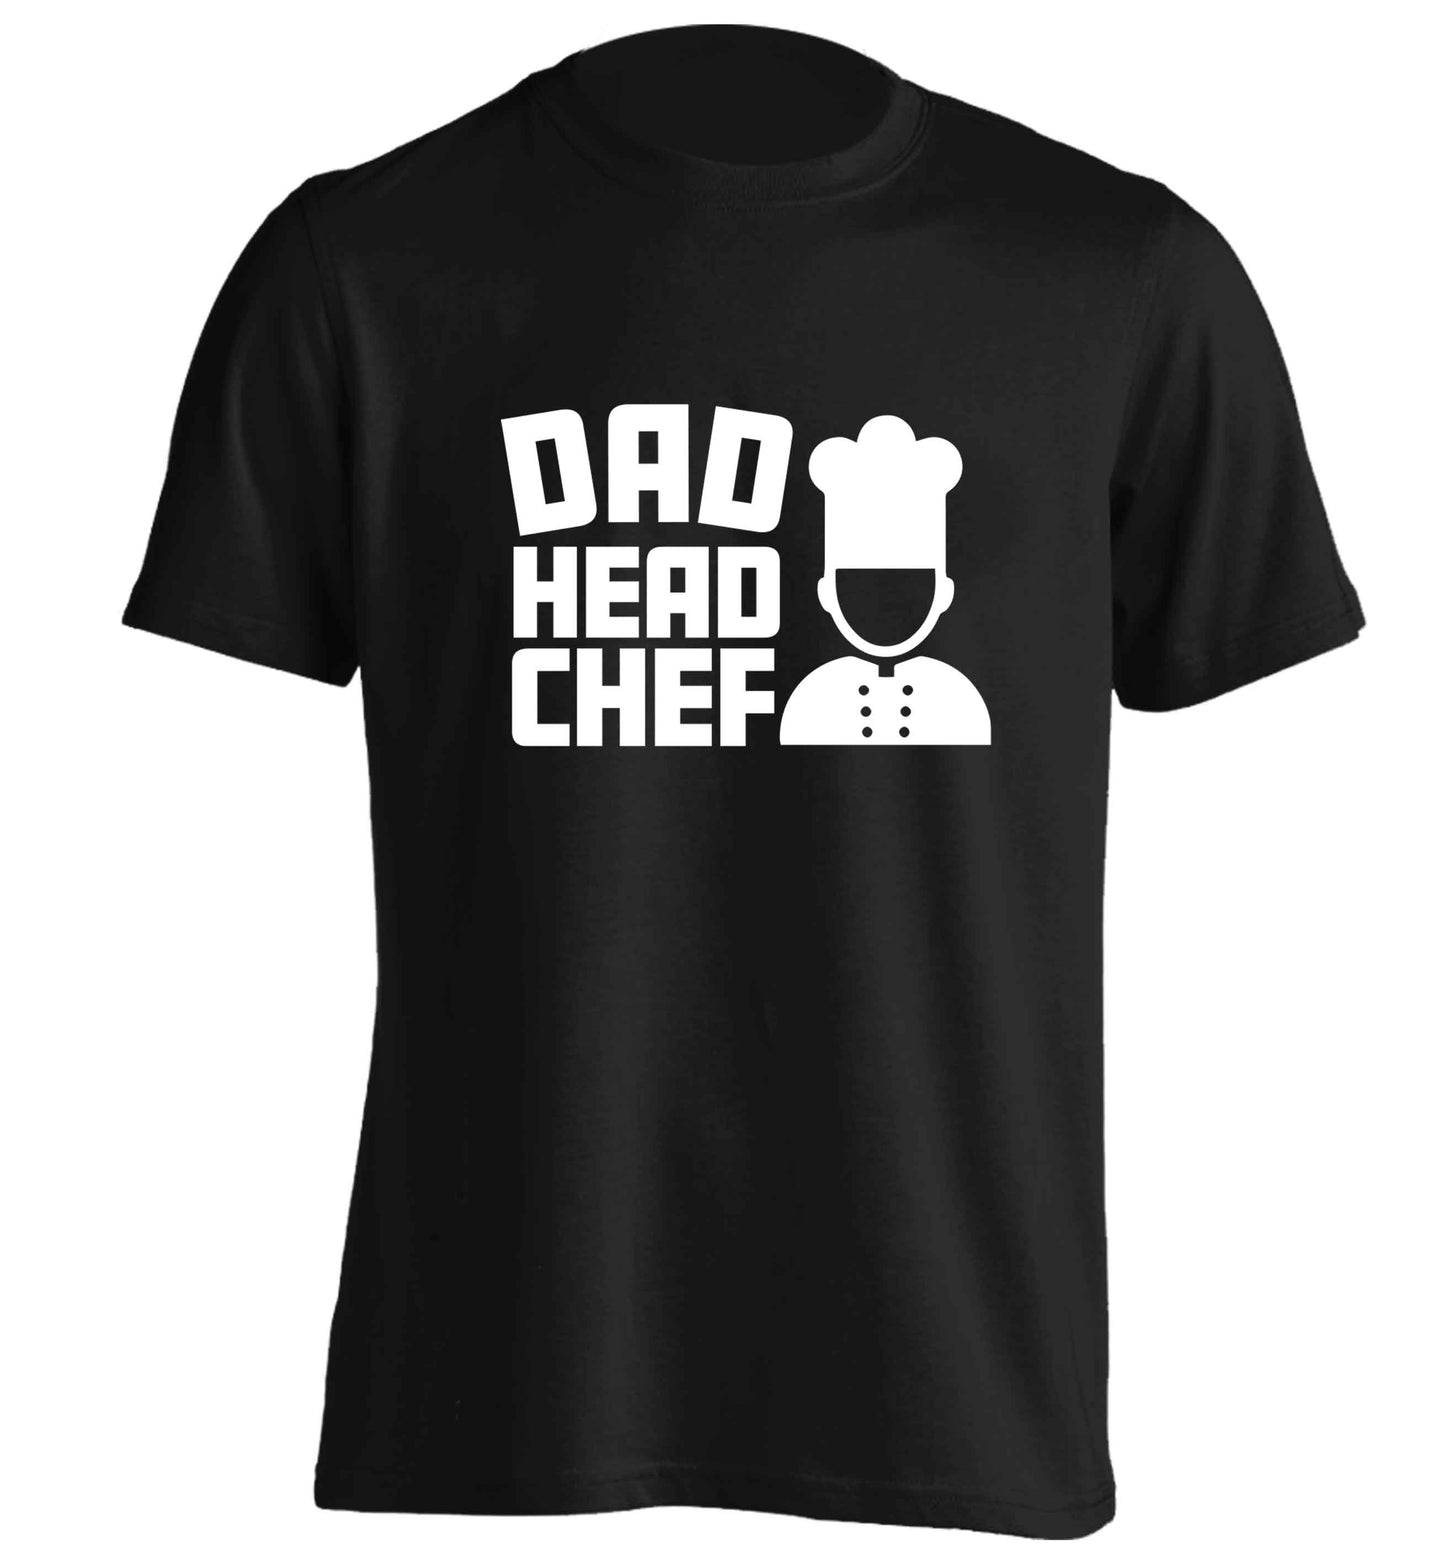 Dad head chef adults unisex black Tshirt 2XL